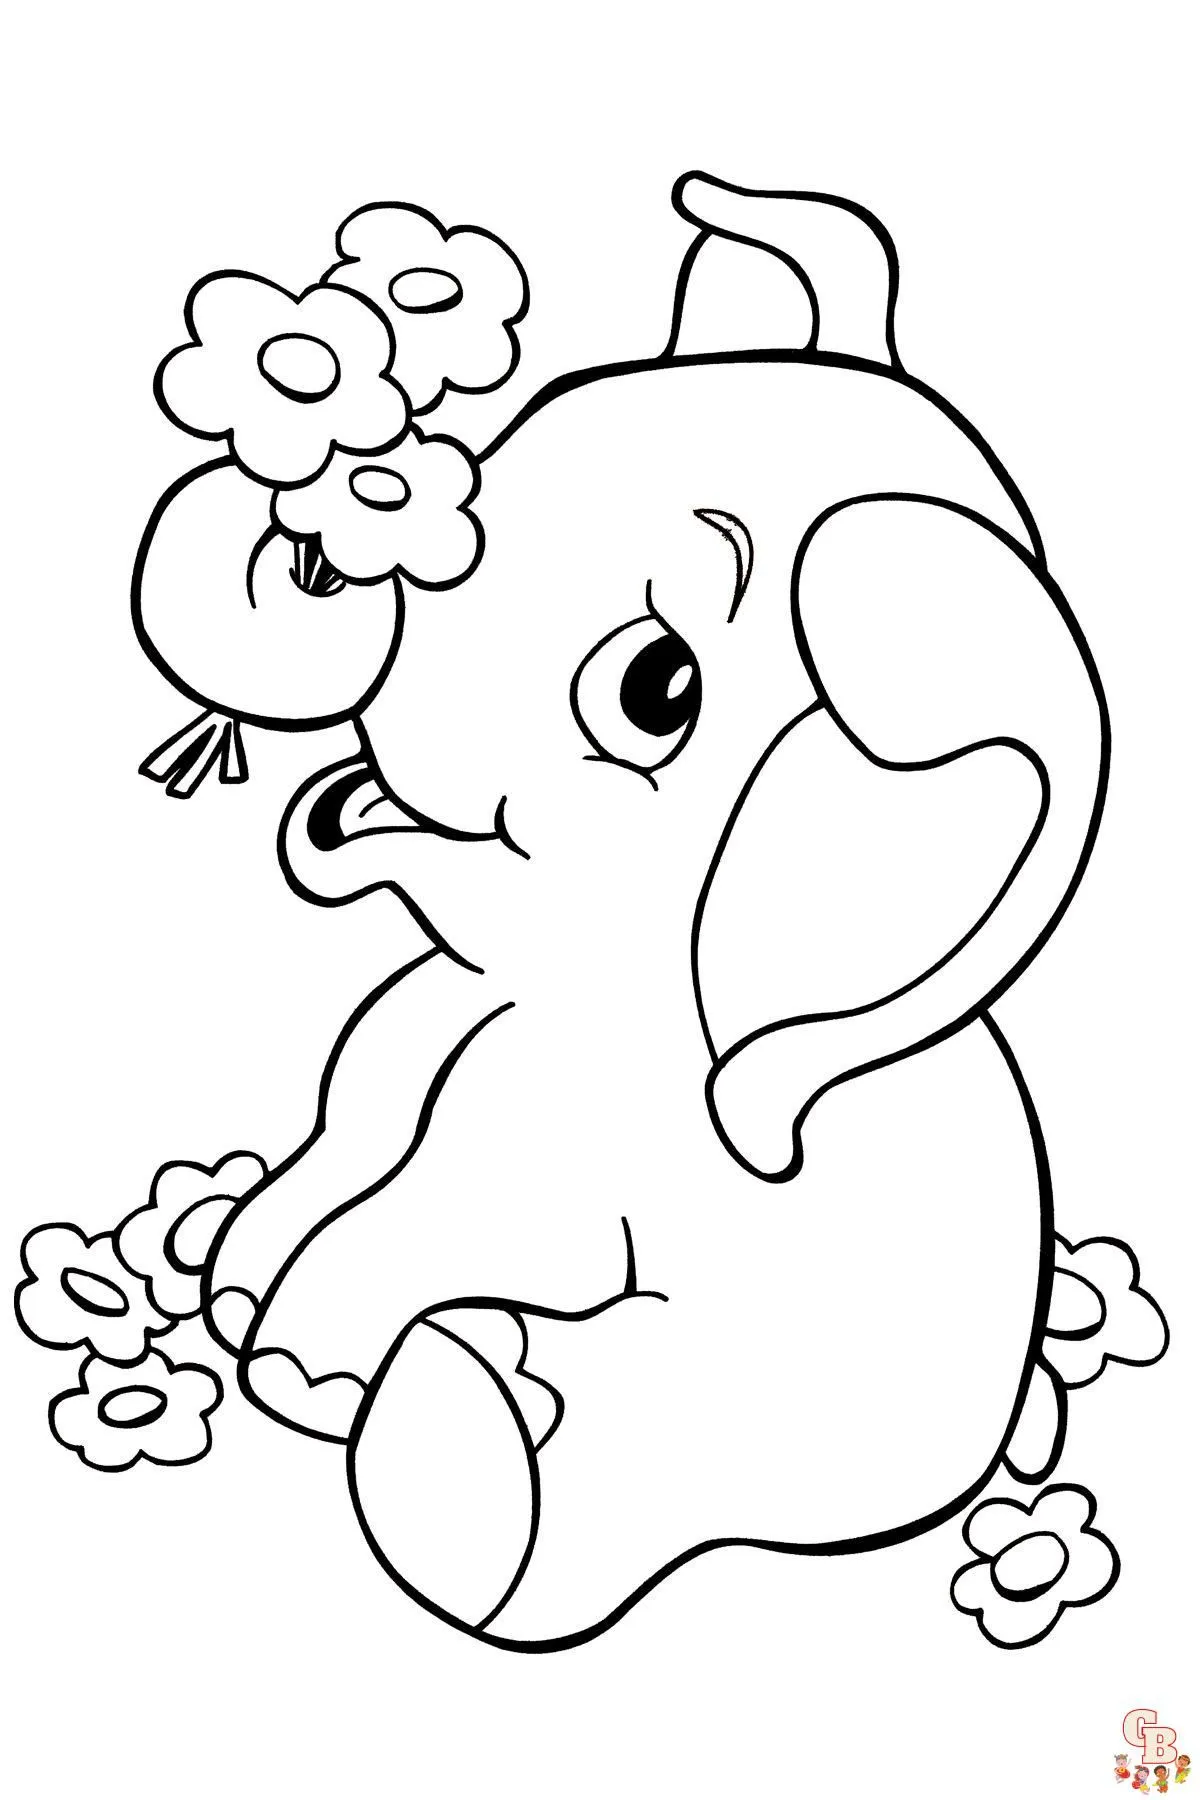 Dibujos de animales de la selva para colorear gratis para niños - GBcoloring